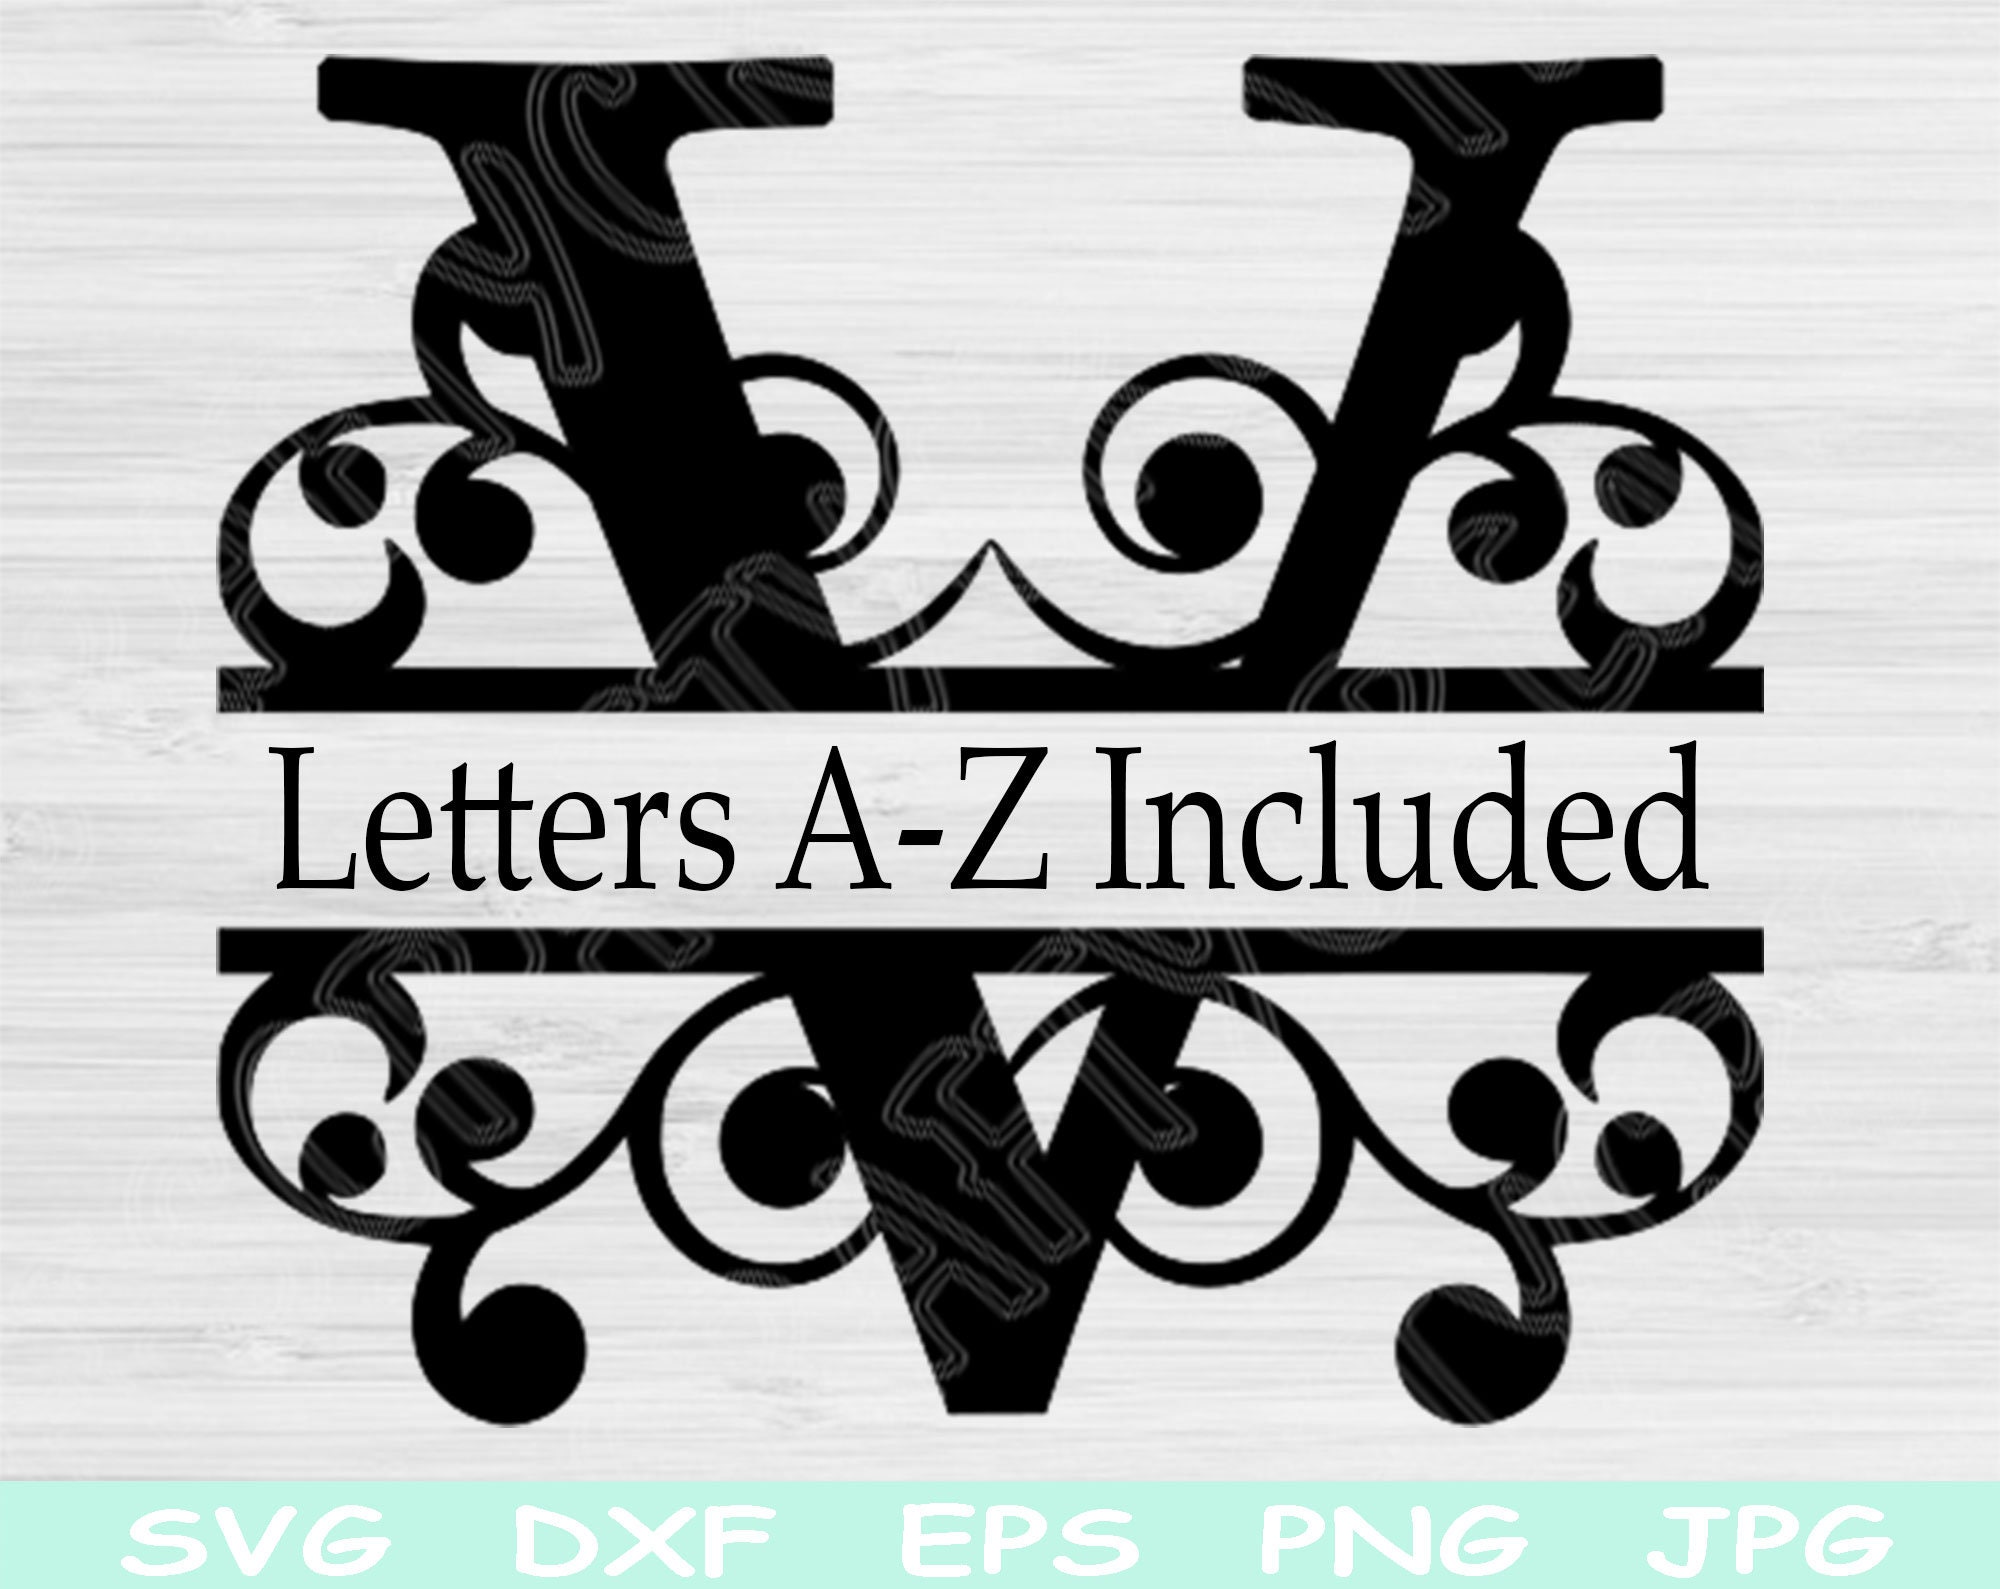 floral alphabet split monogram bundle, letters free svg file - SVG Heart